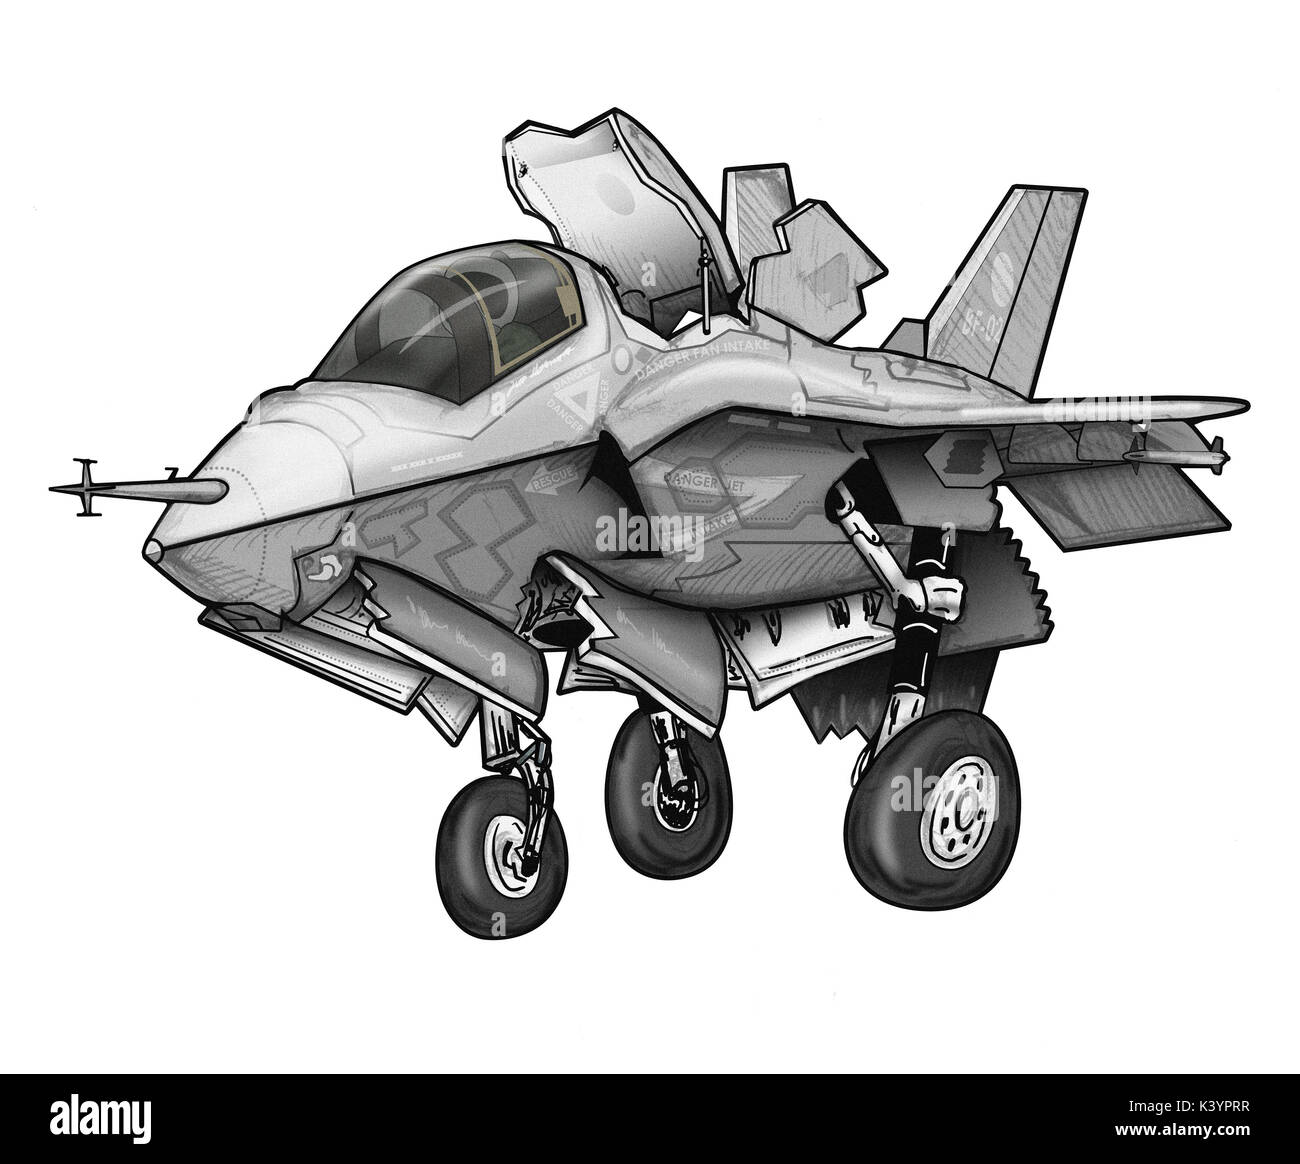 Joint Strike Fighter Cartoon Illustration Stock Photo